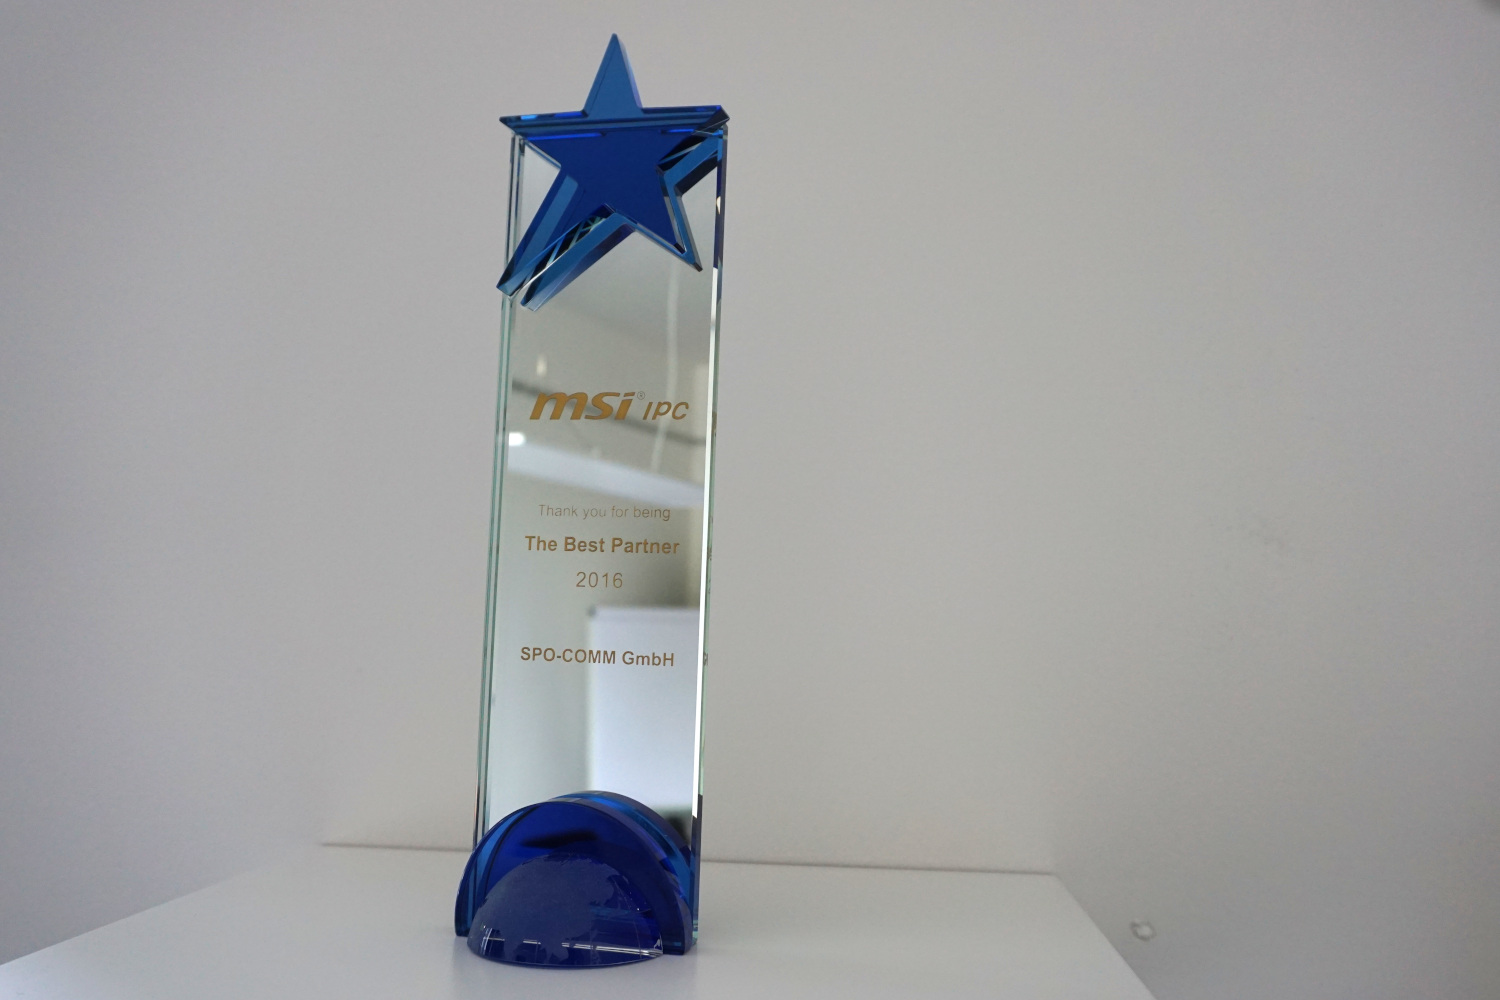 spo-comm mit MSI IPC Award ausgezeichnet